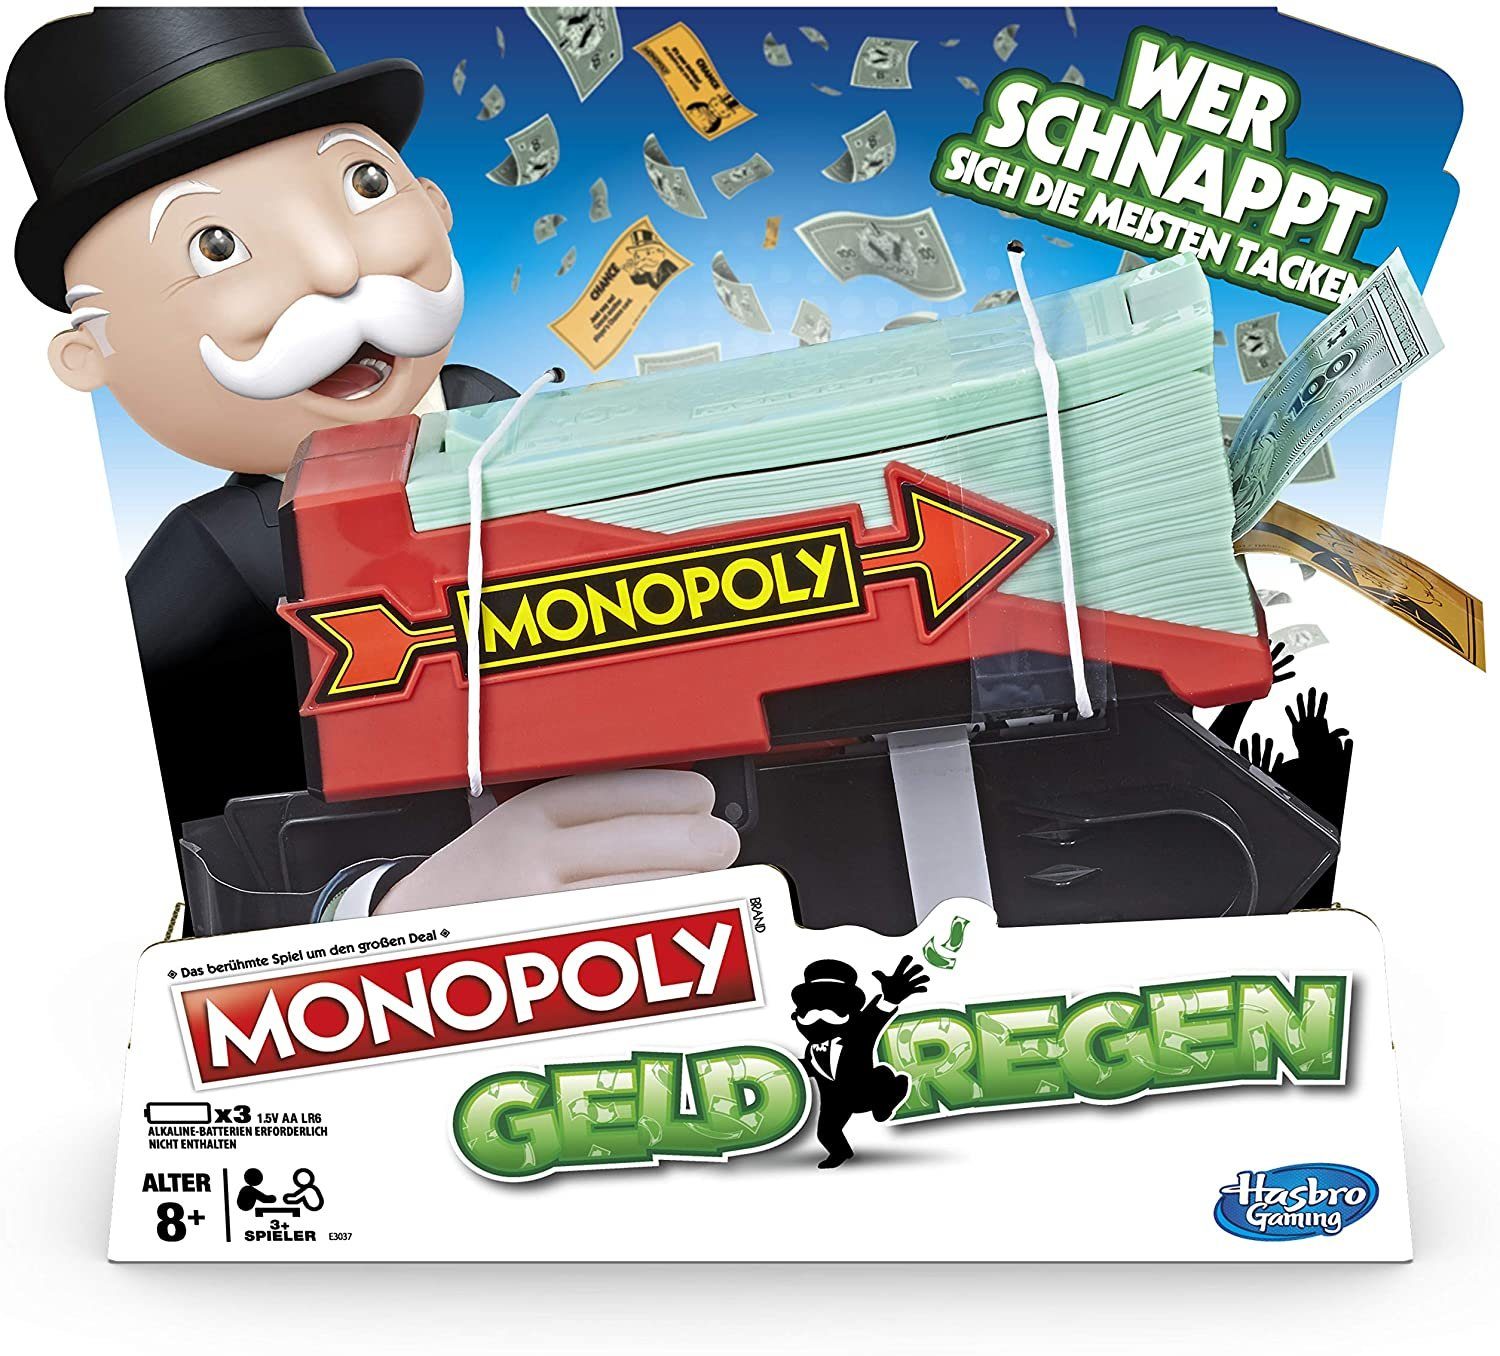 Hasbro Spiel, Brettspiel Monopoly Spielgeld Kanone Geldregen, Wirbelt Geld und Ereigniskarten in die Luft!